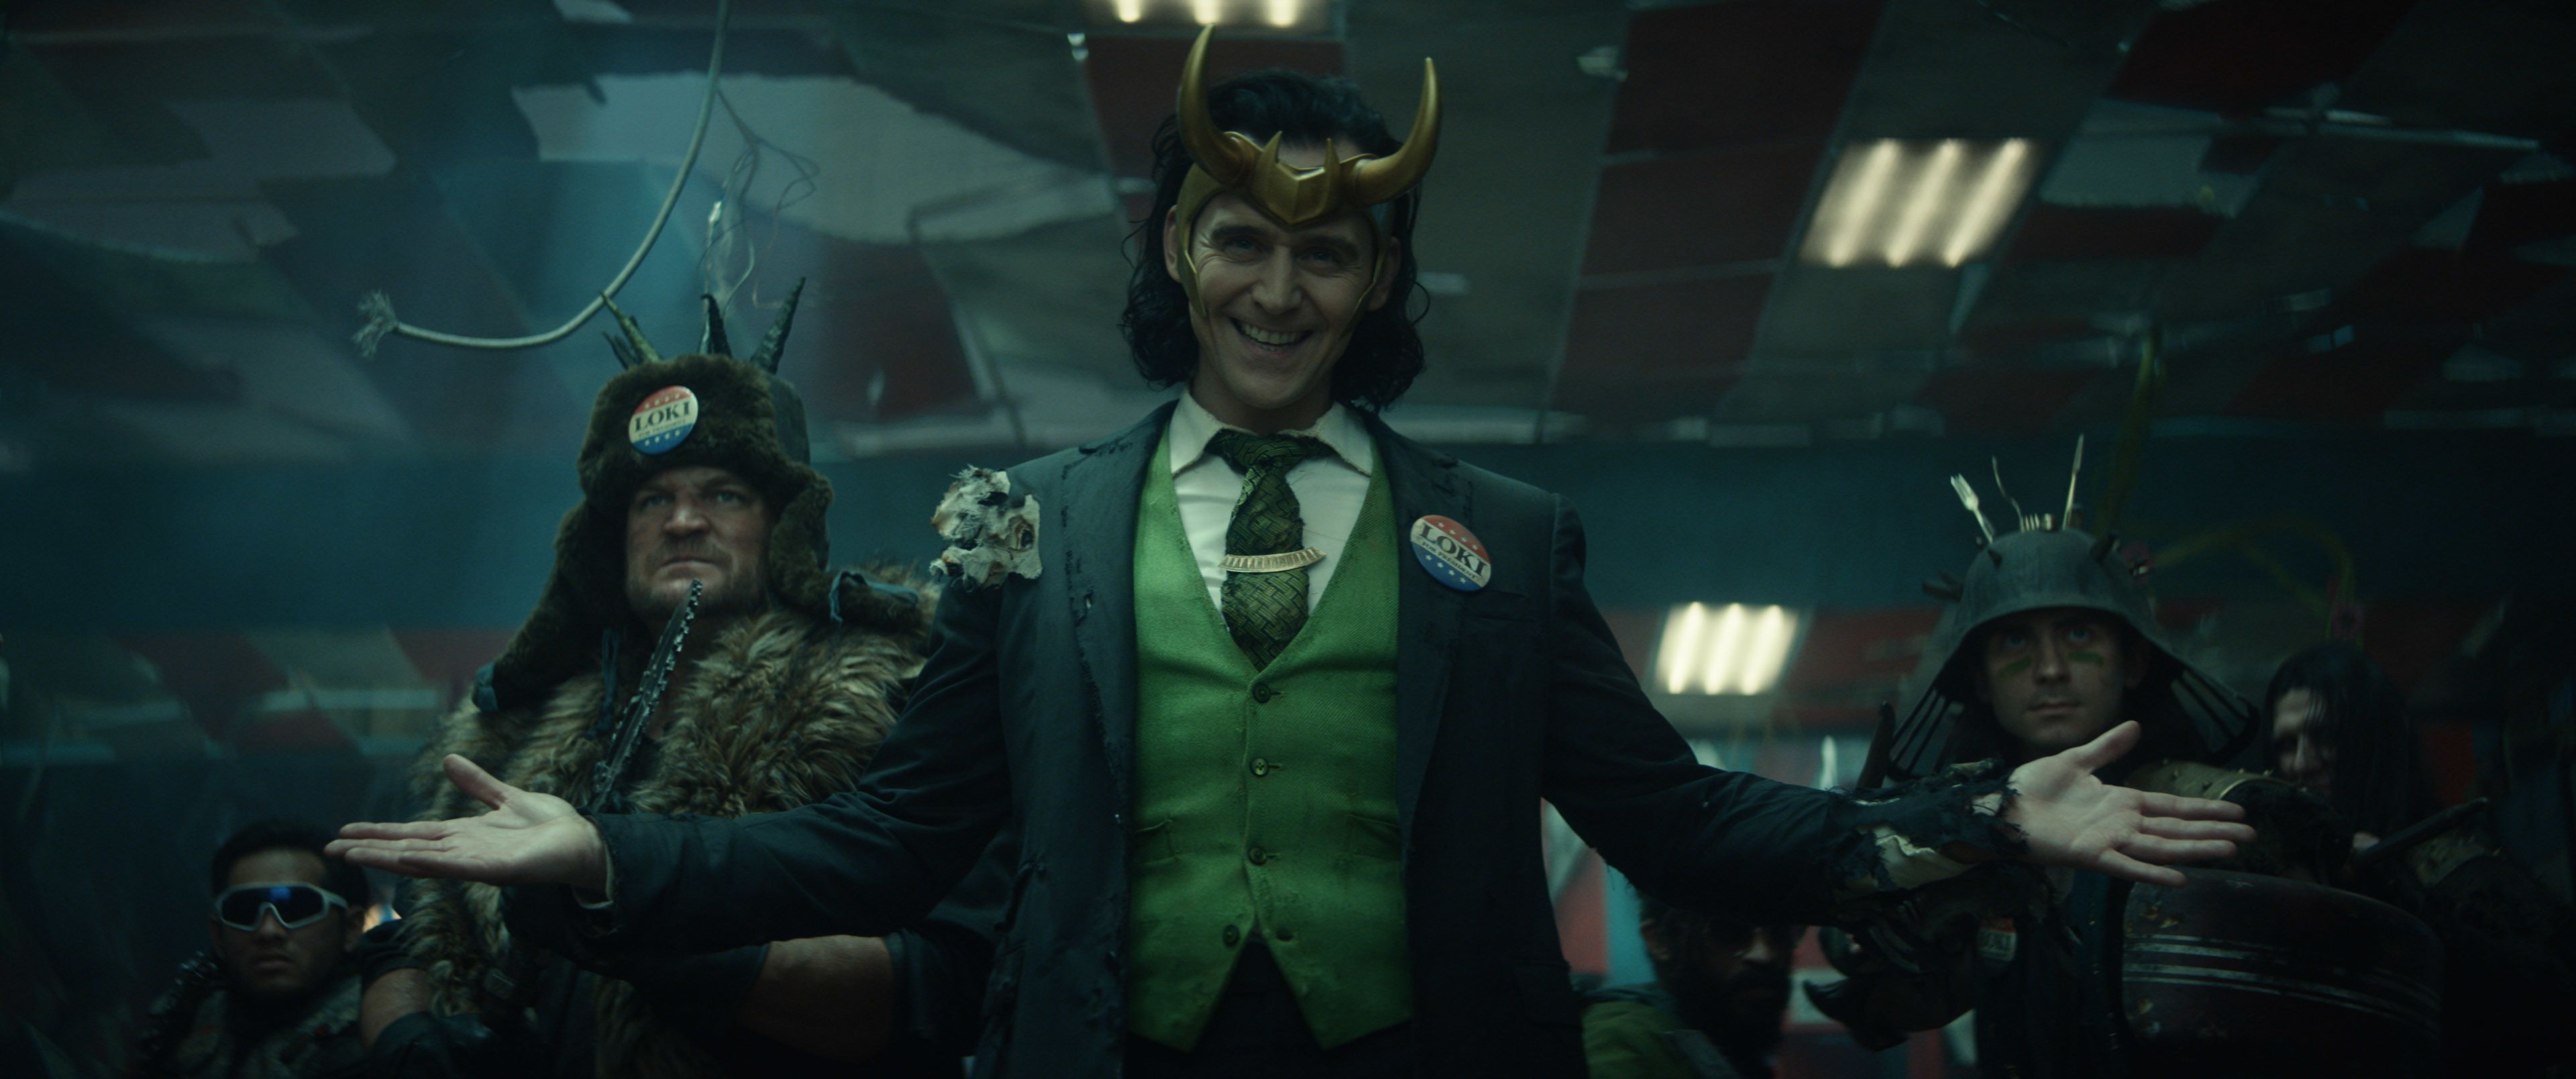 Loki' Episode 3 Explained: What is Loki's Sexuality?